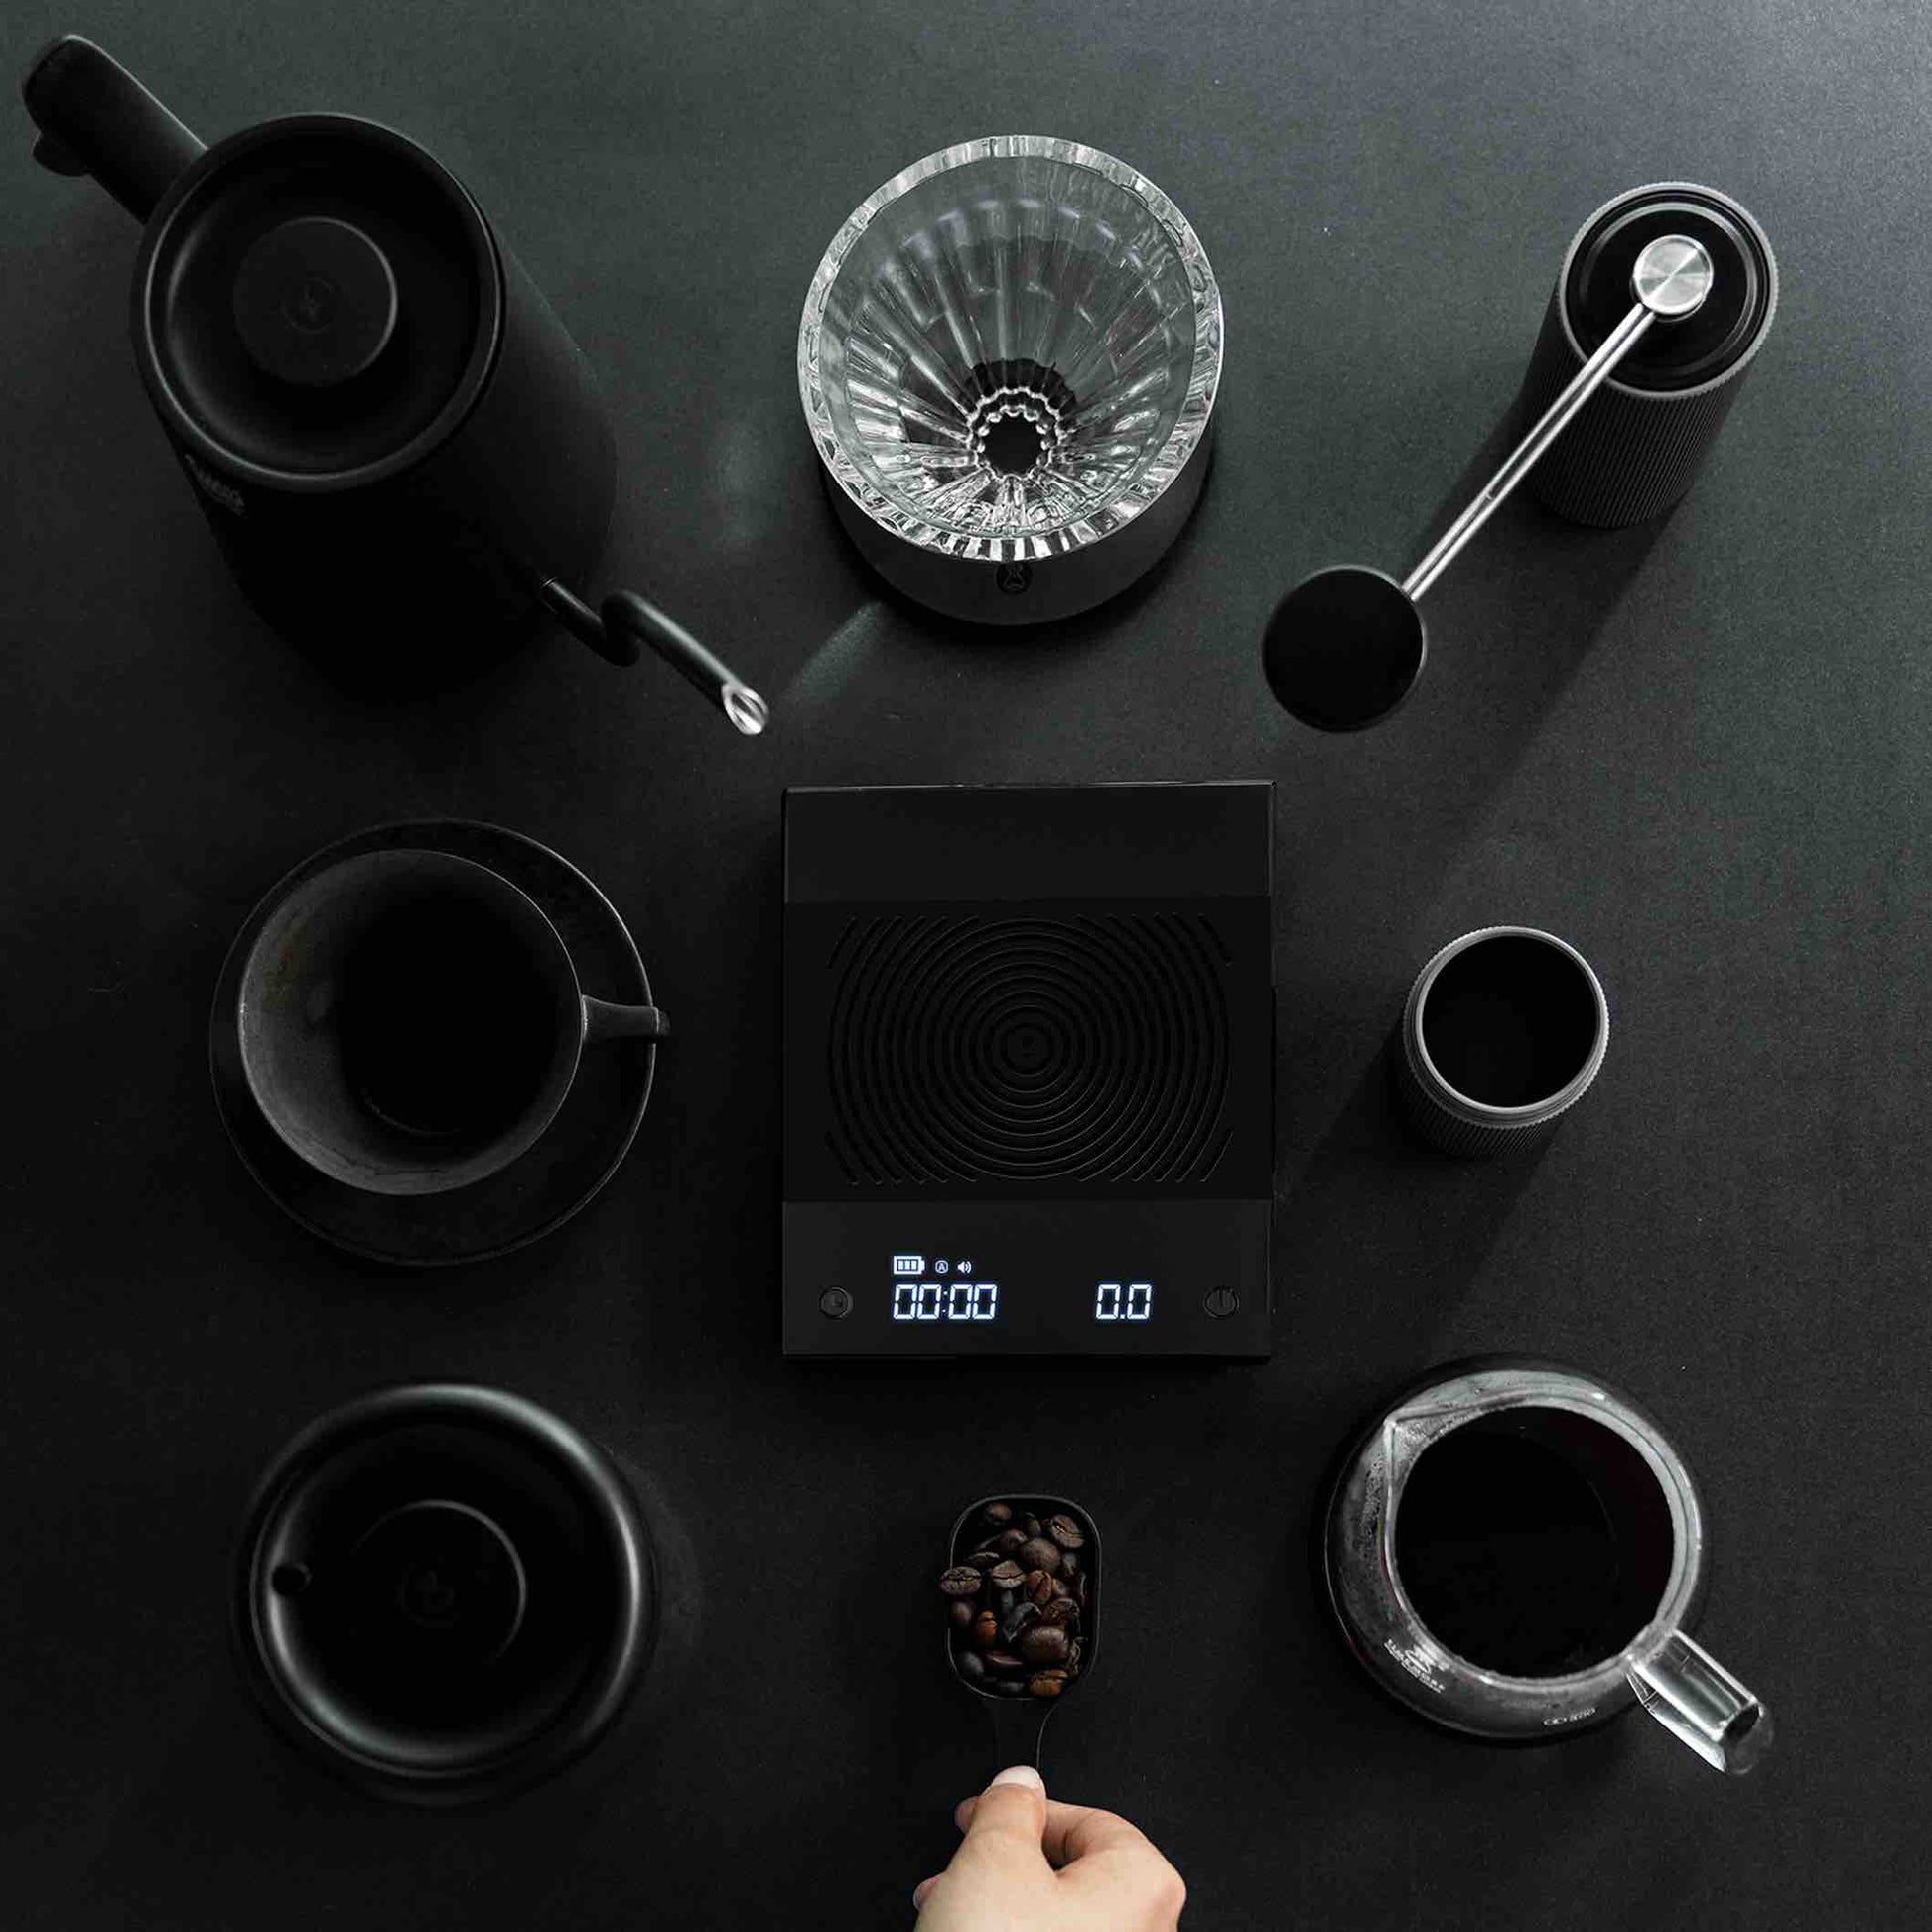 New Black Mirror Basic Pro scale comes in unsealed black box : r/espresso